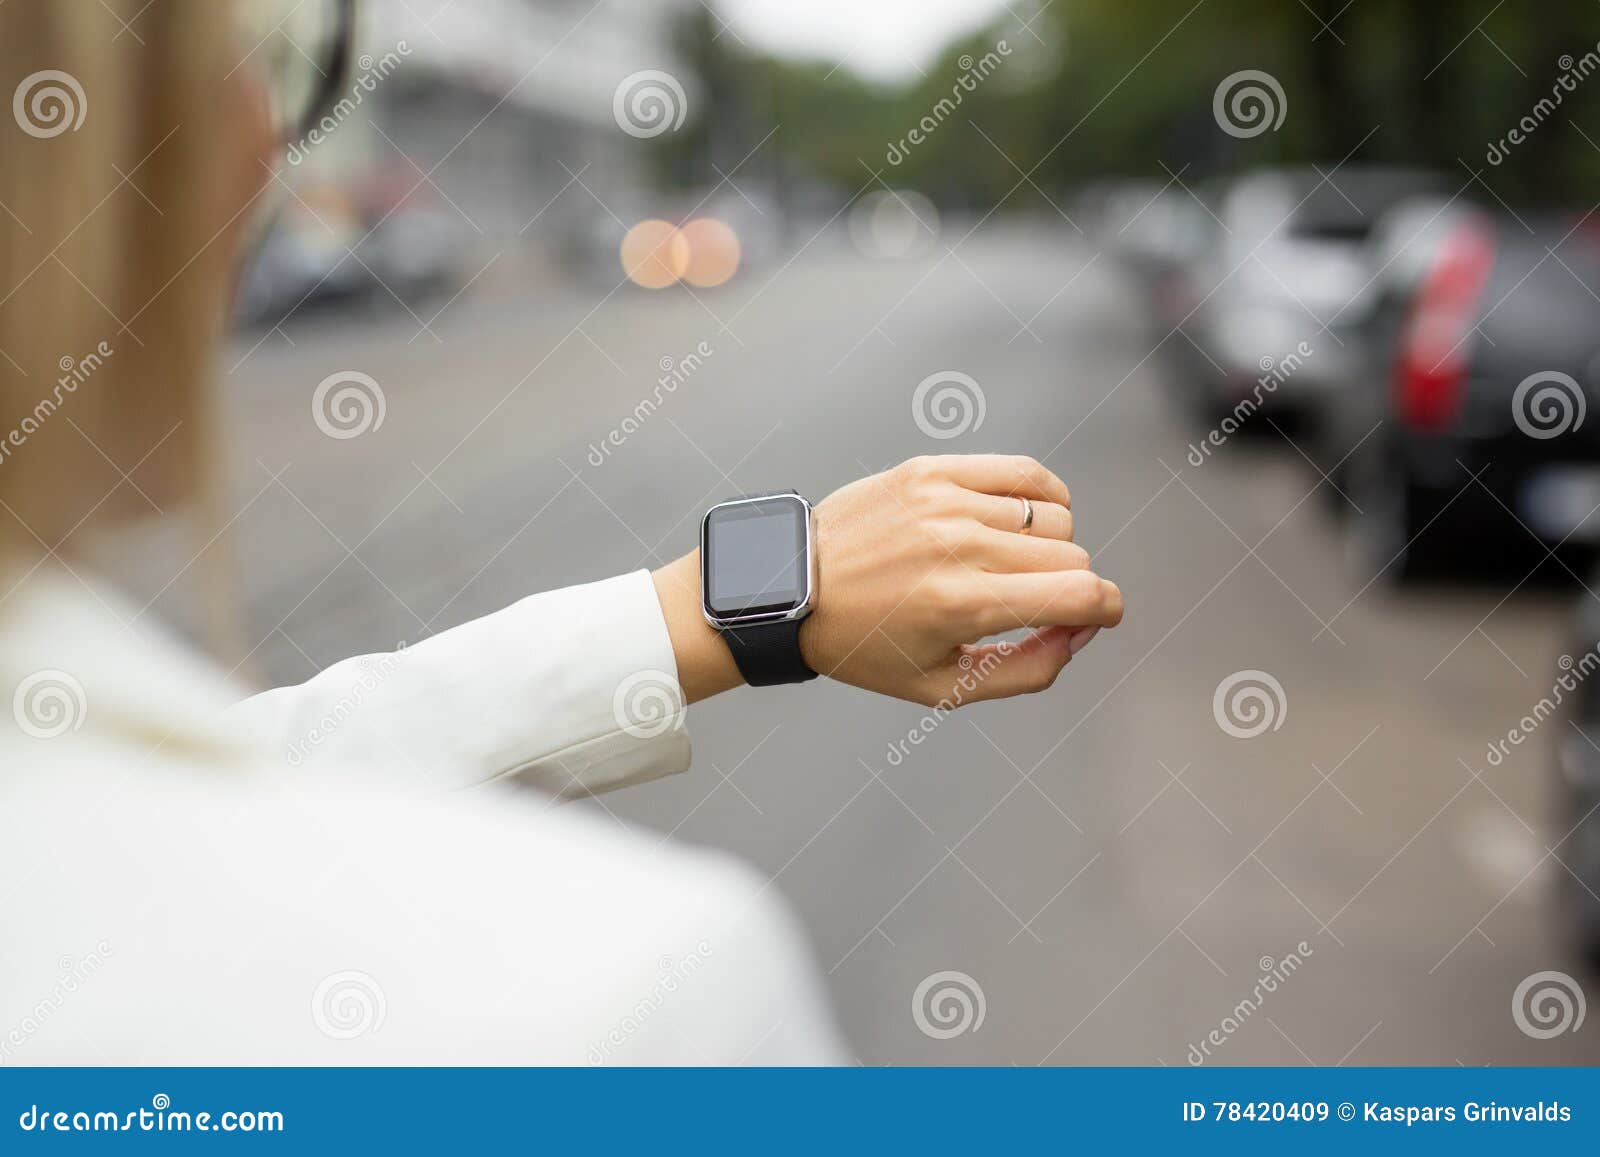 smart watch on womans wrist